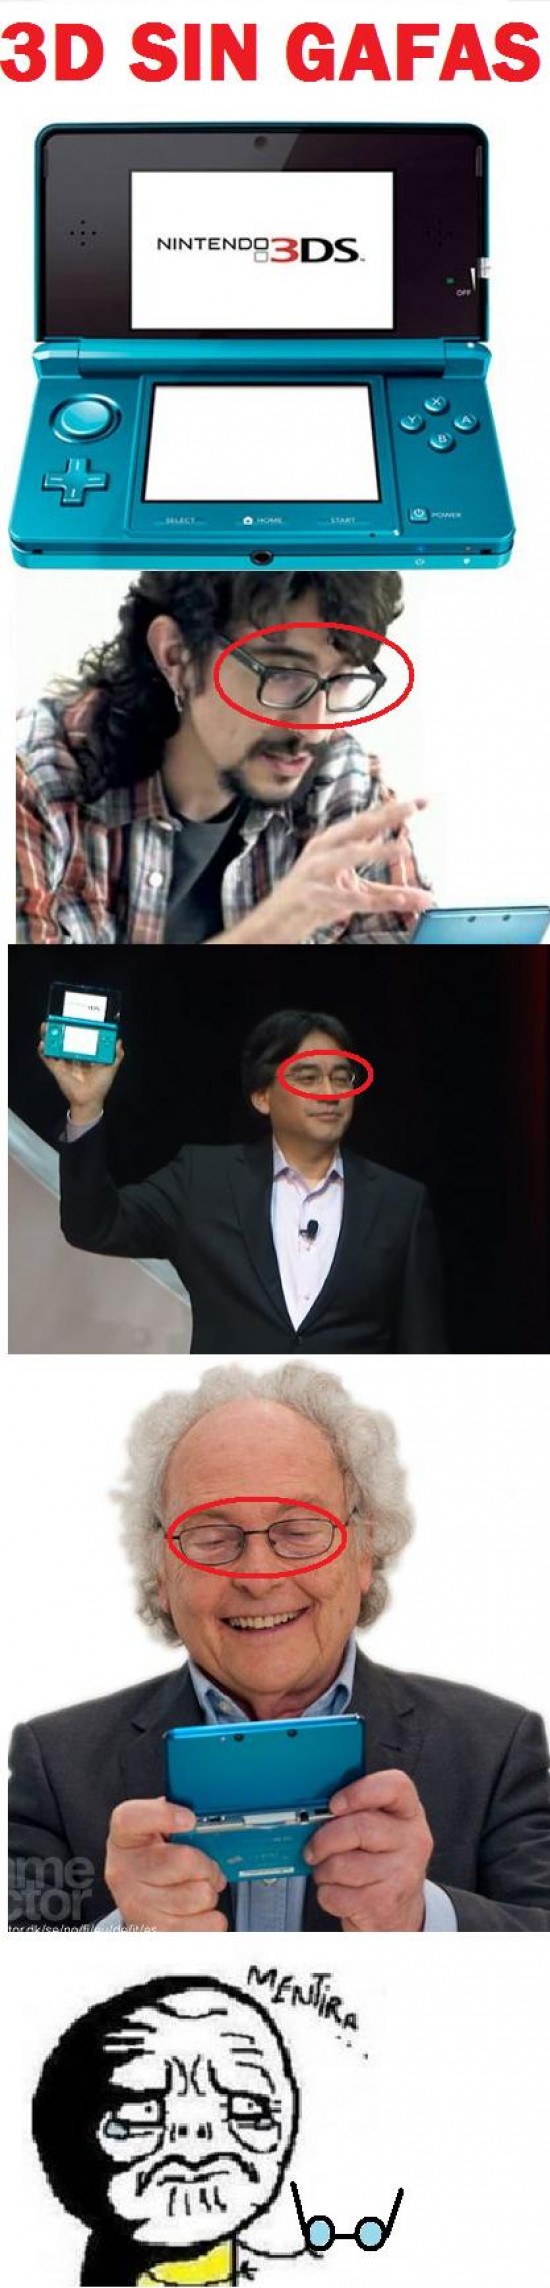 Mentira - Nintendo 3DS sin gafas